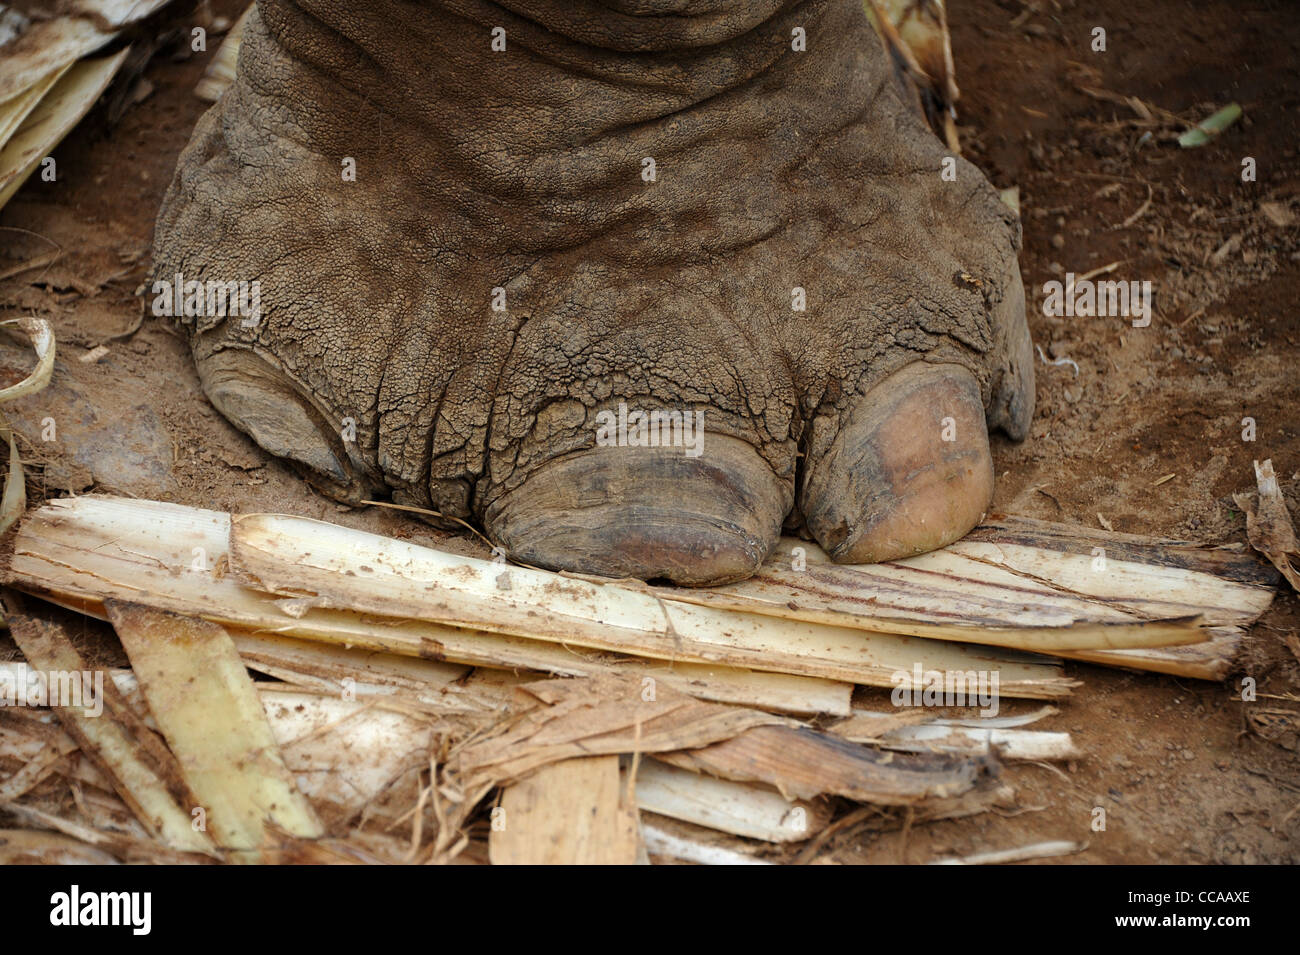 Gros plan du pied d'éléphant debout sur bananier. Thaïlande Banque D'Images